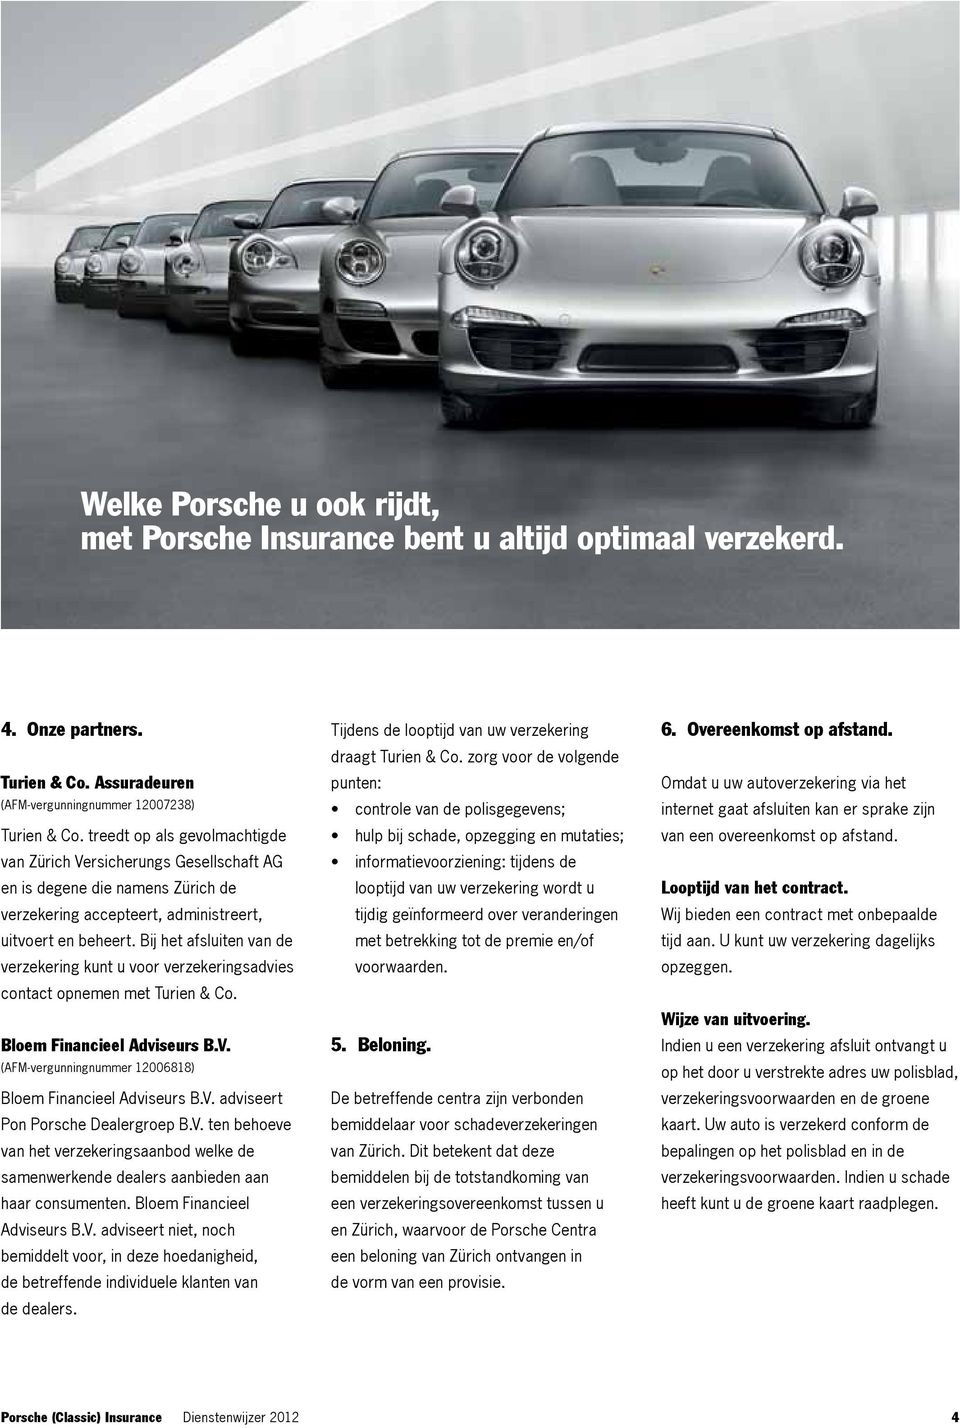 Bij het afsluiten van de verzekering kunt u voor verzekeringsadvies contact opnemen met Turien & Co. Bloem Financieel Adviseurs B.V. (Afm-vergunningnummer 12006818) Bloem Financieel Adviseurs B.V. adviseert Pon Porsche Dealergroep B.